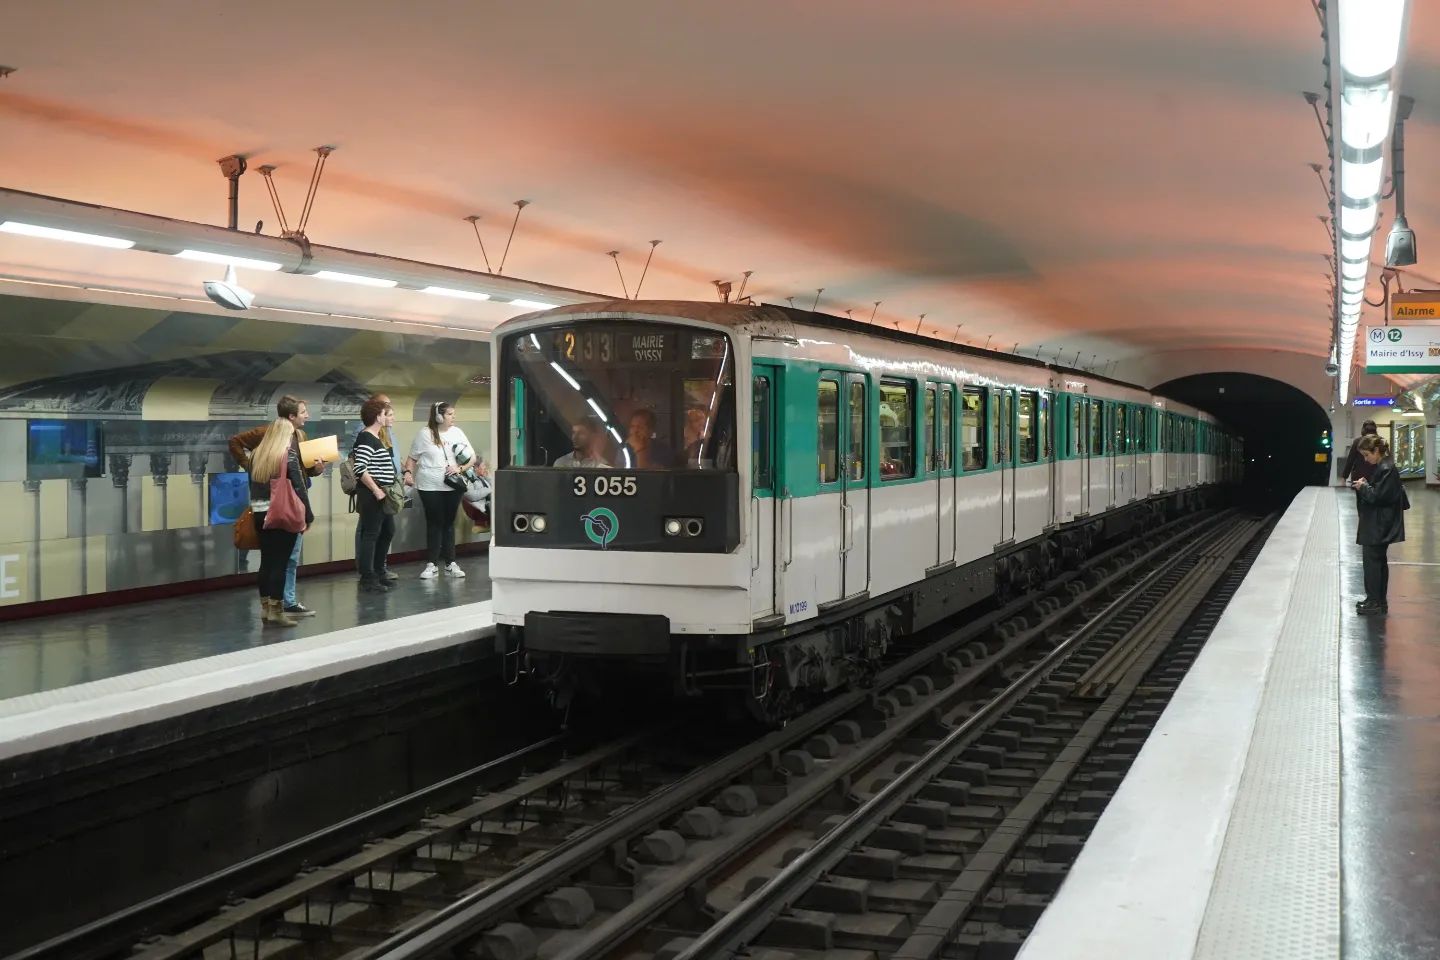 longest train ride - montparnasse station